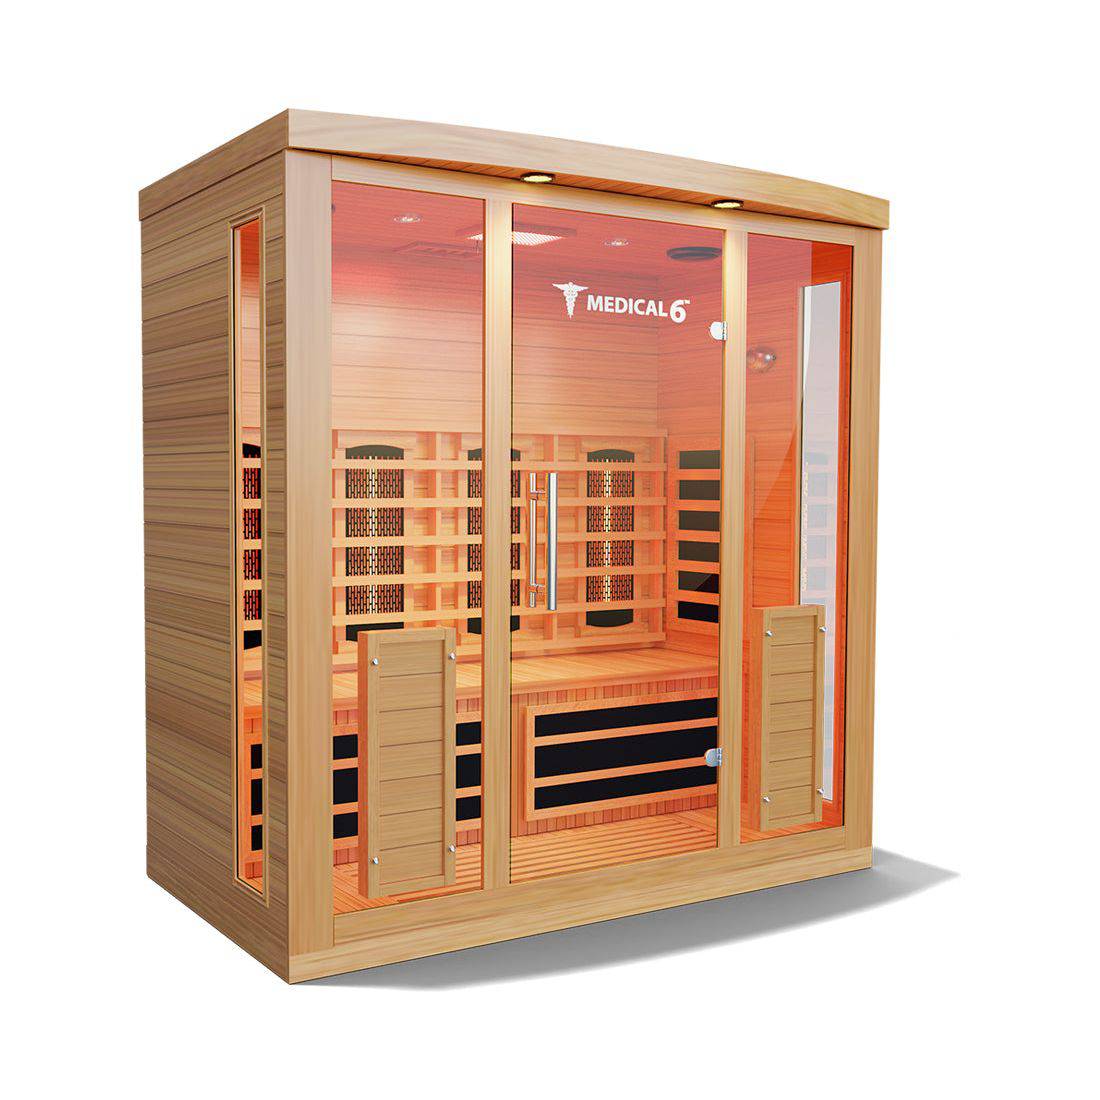 Medical Saunas Medical 6 Infrared Sauna (4 Person) - Serenity Provision